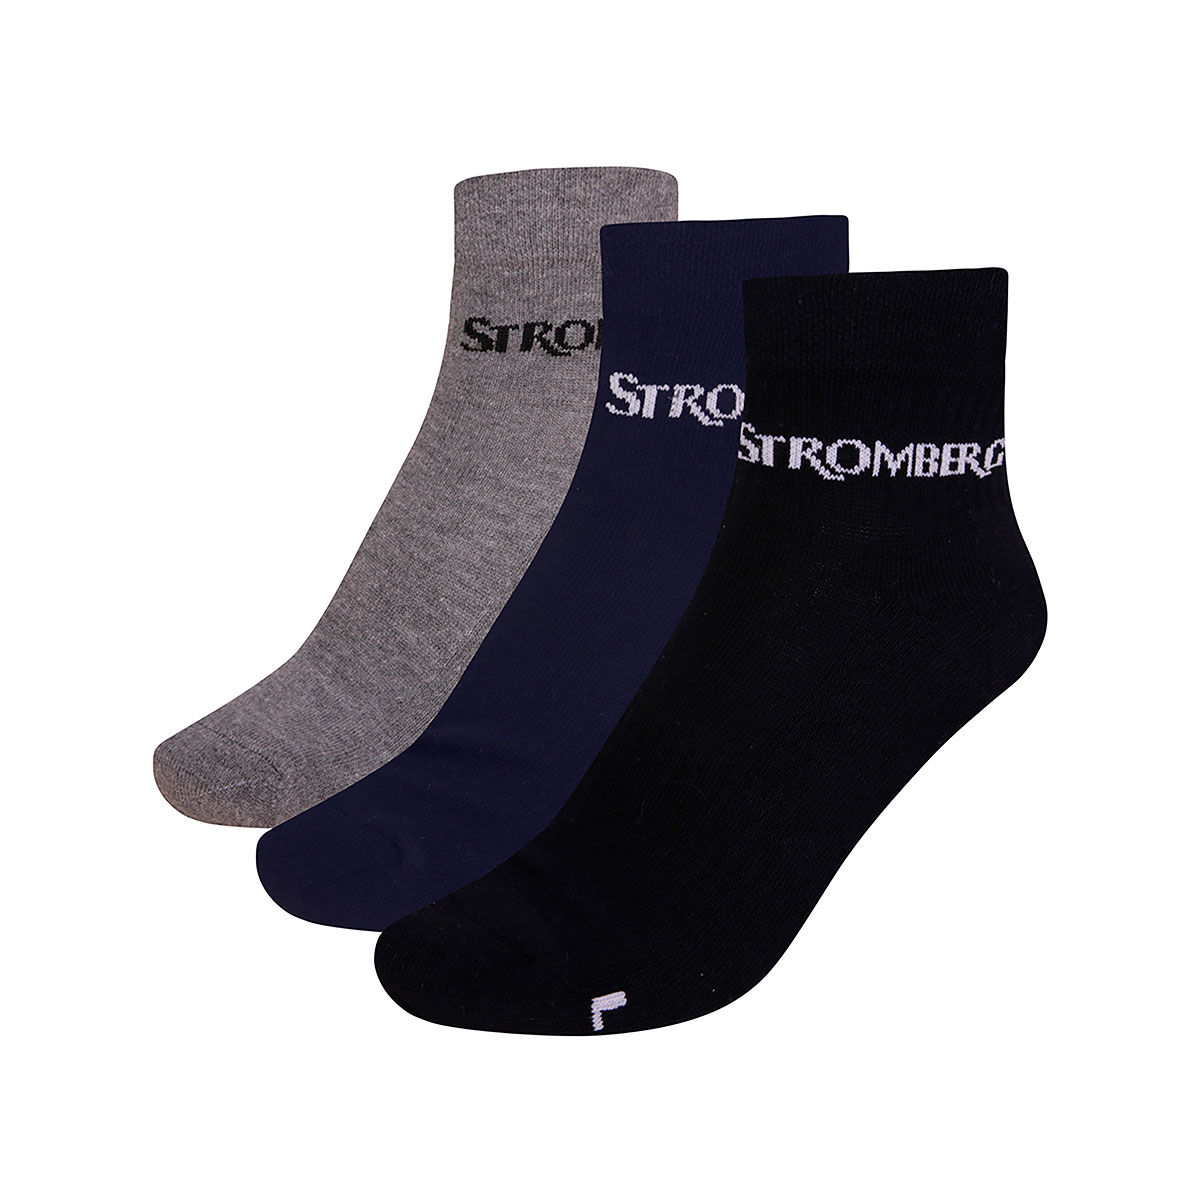 Stromberg Men’s Ankle Golf Socks - 3 Pack, Mens, Multi, 6-8.5 | American Golf